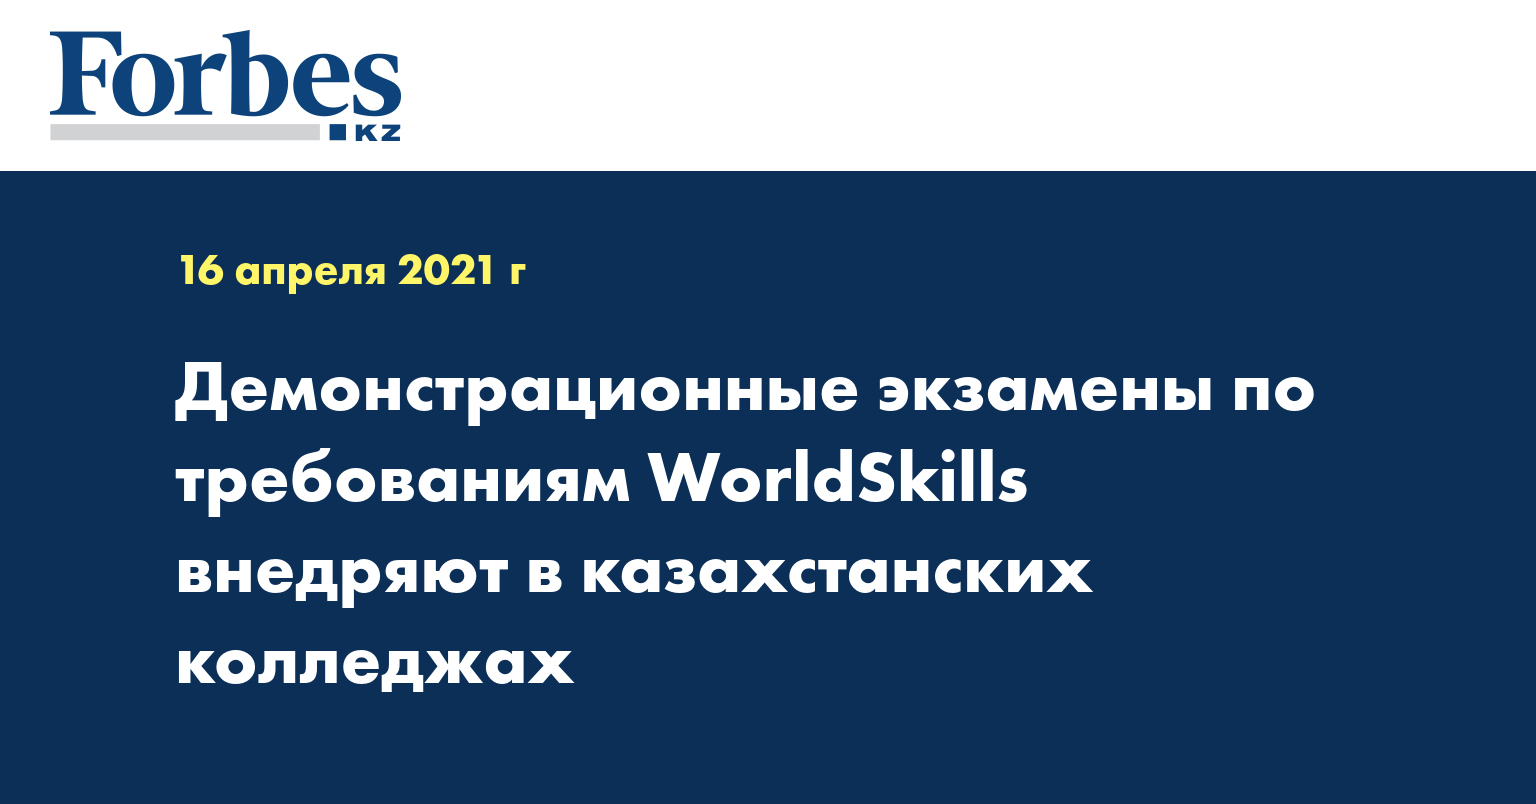 Демонстрационные экзамены по требованиям WorldSkills  внедряют в казахстанских колледжах